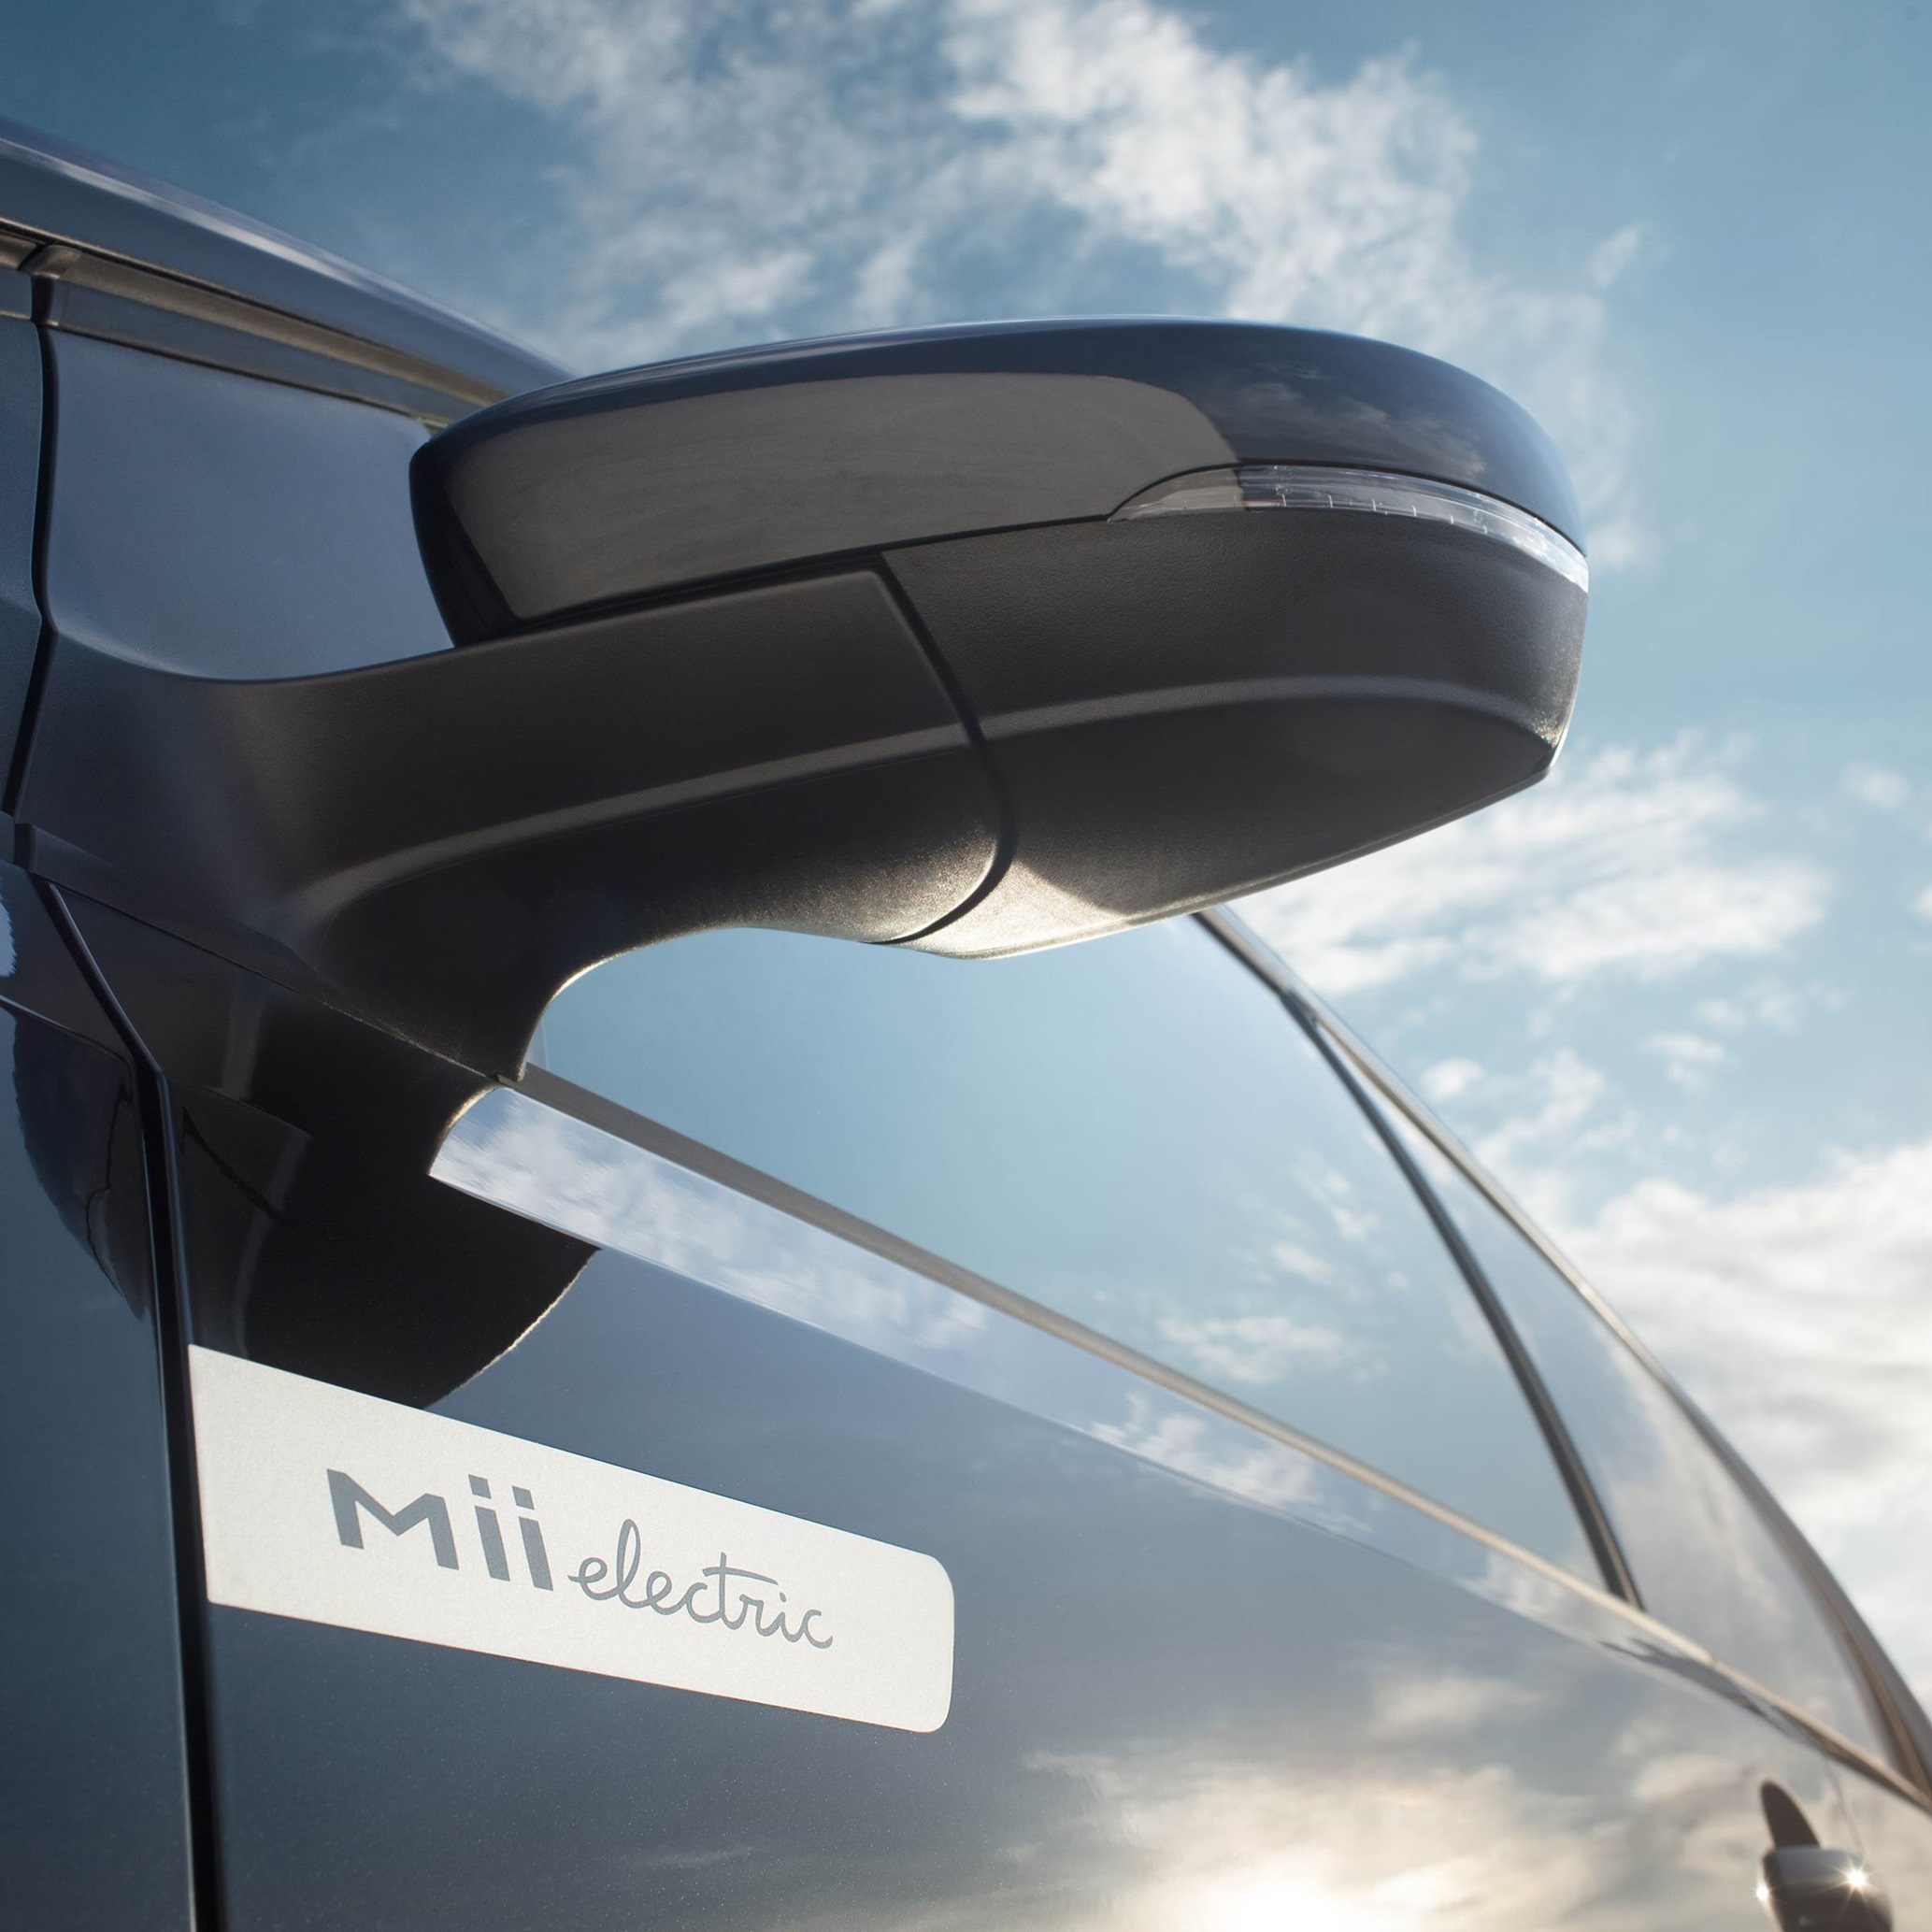 Met de buitenspiegelkappen in de carrosseriekleur ziet de Mii electric er strak en gestroomlijnd uit. 